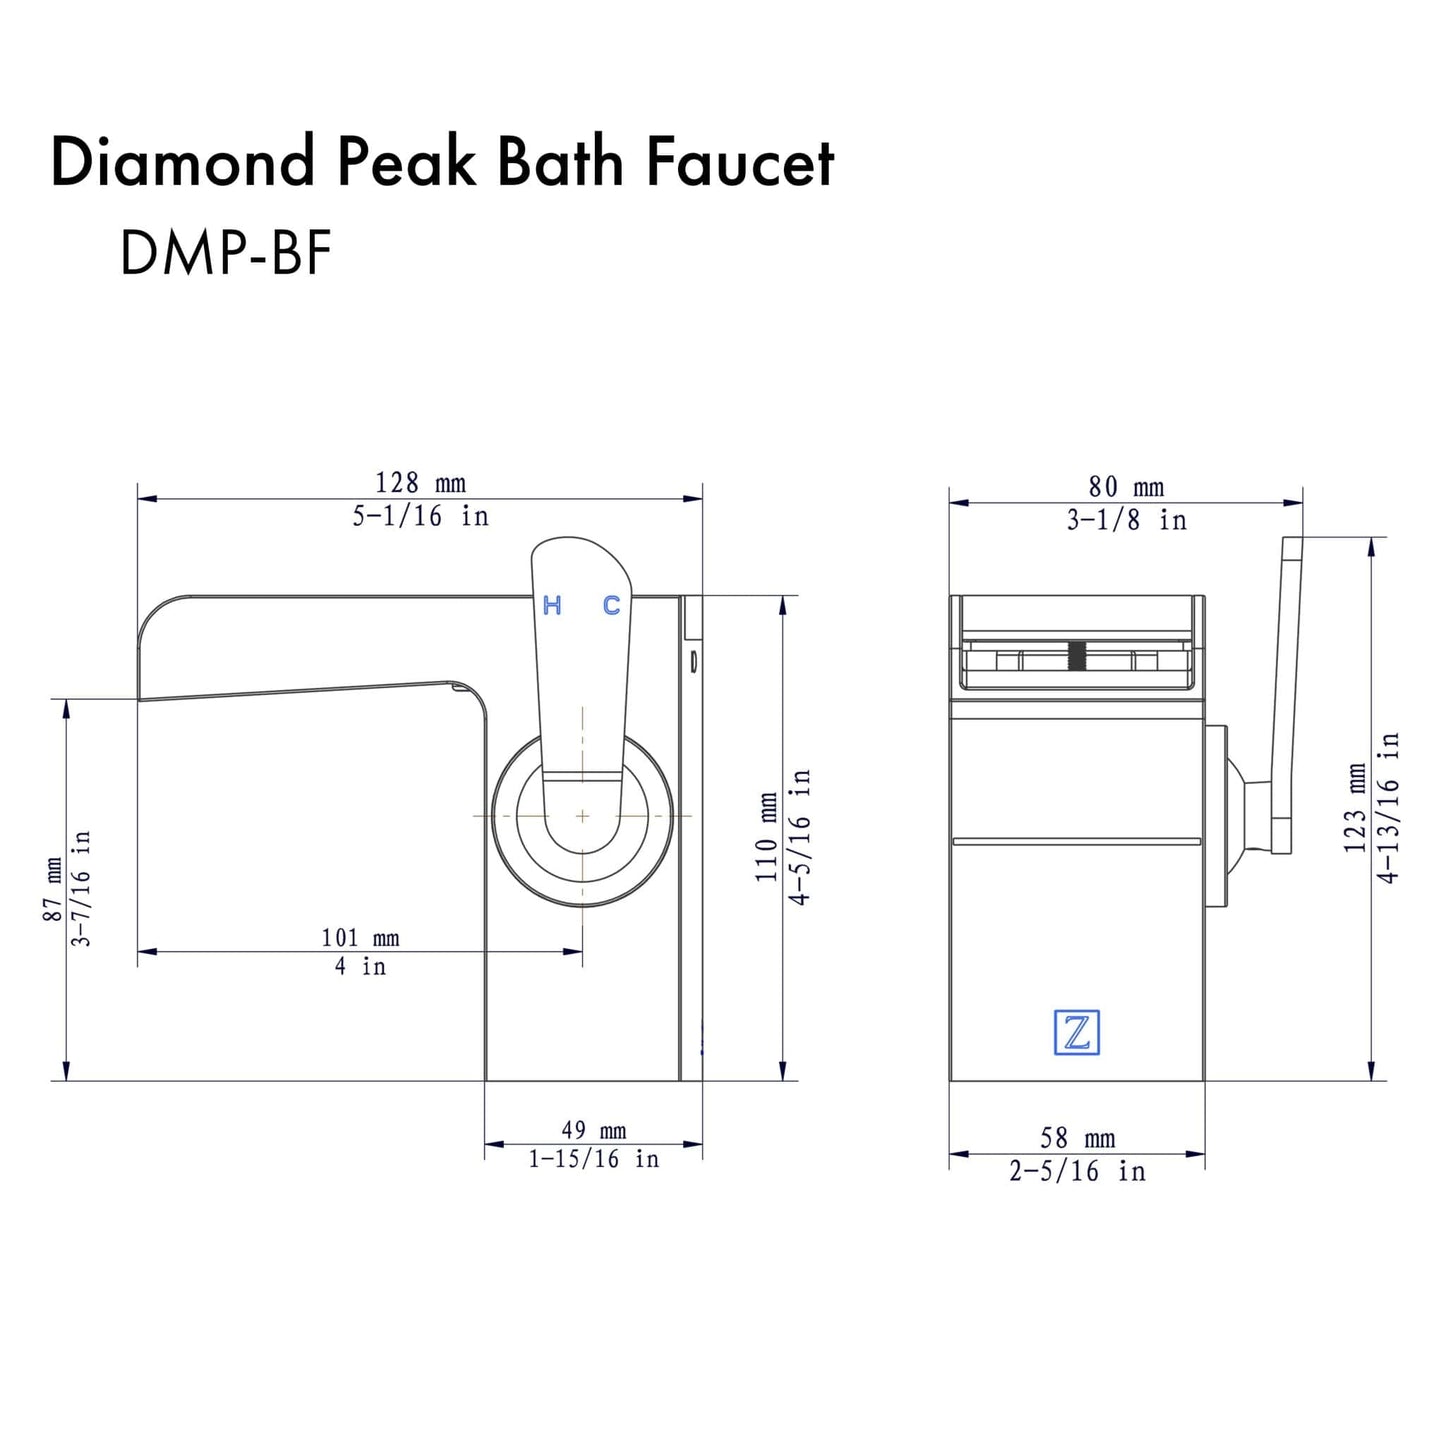 ZLINE Diamond Peak Bath Faucet with Color Options (DMP-BF)